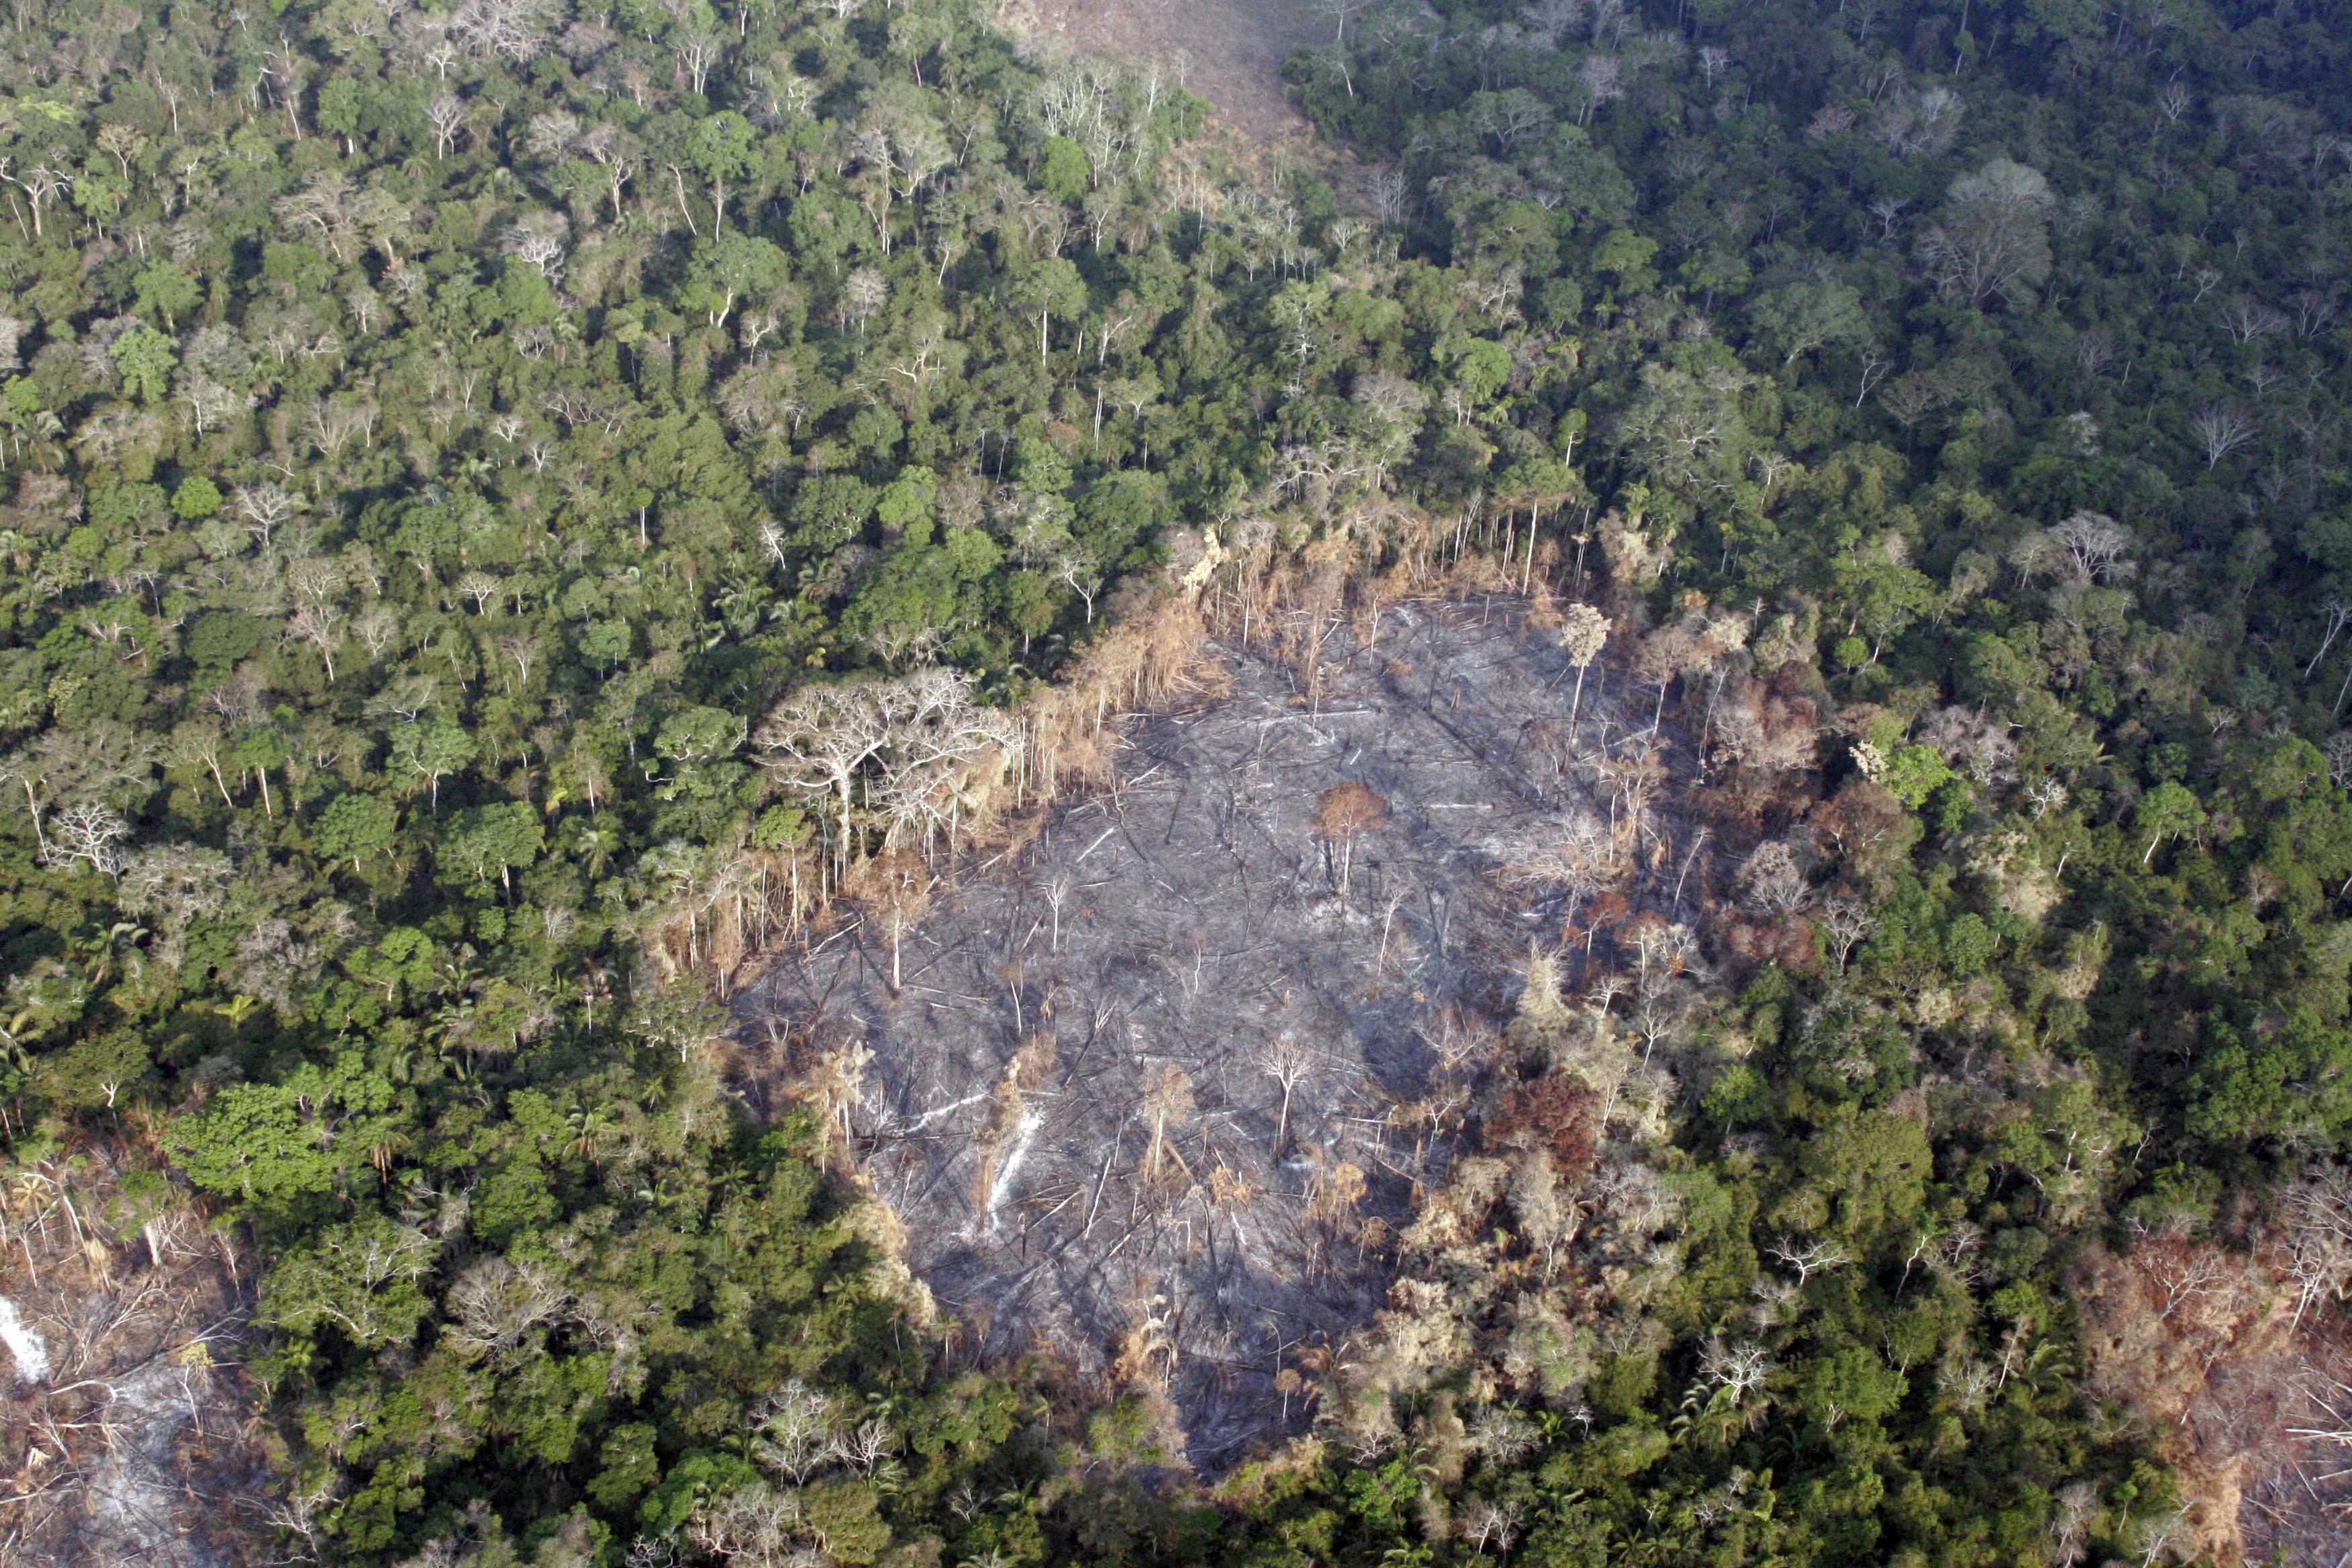 Vista aerea di un'area devastata della foresta Amazzonica tra le città di Xapuri e Rio Branco, Brasile.